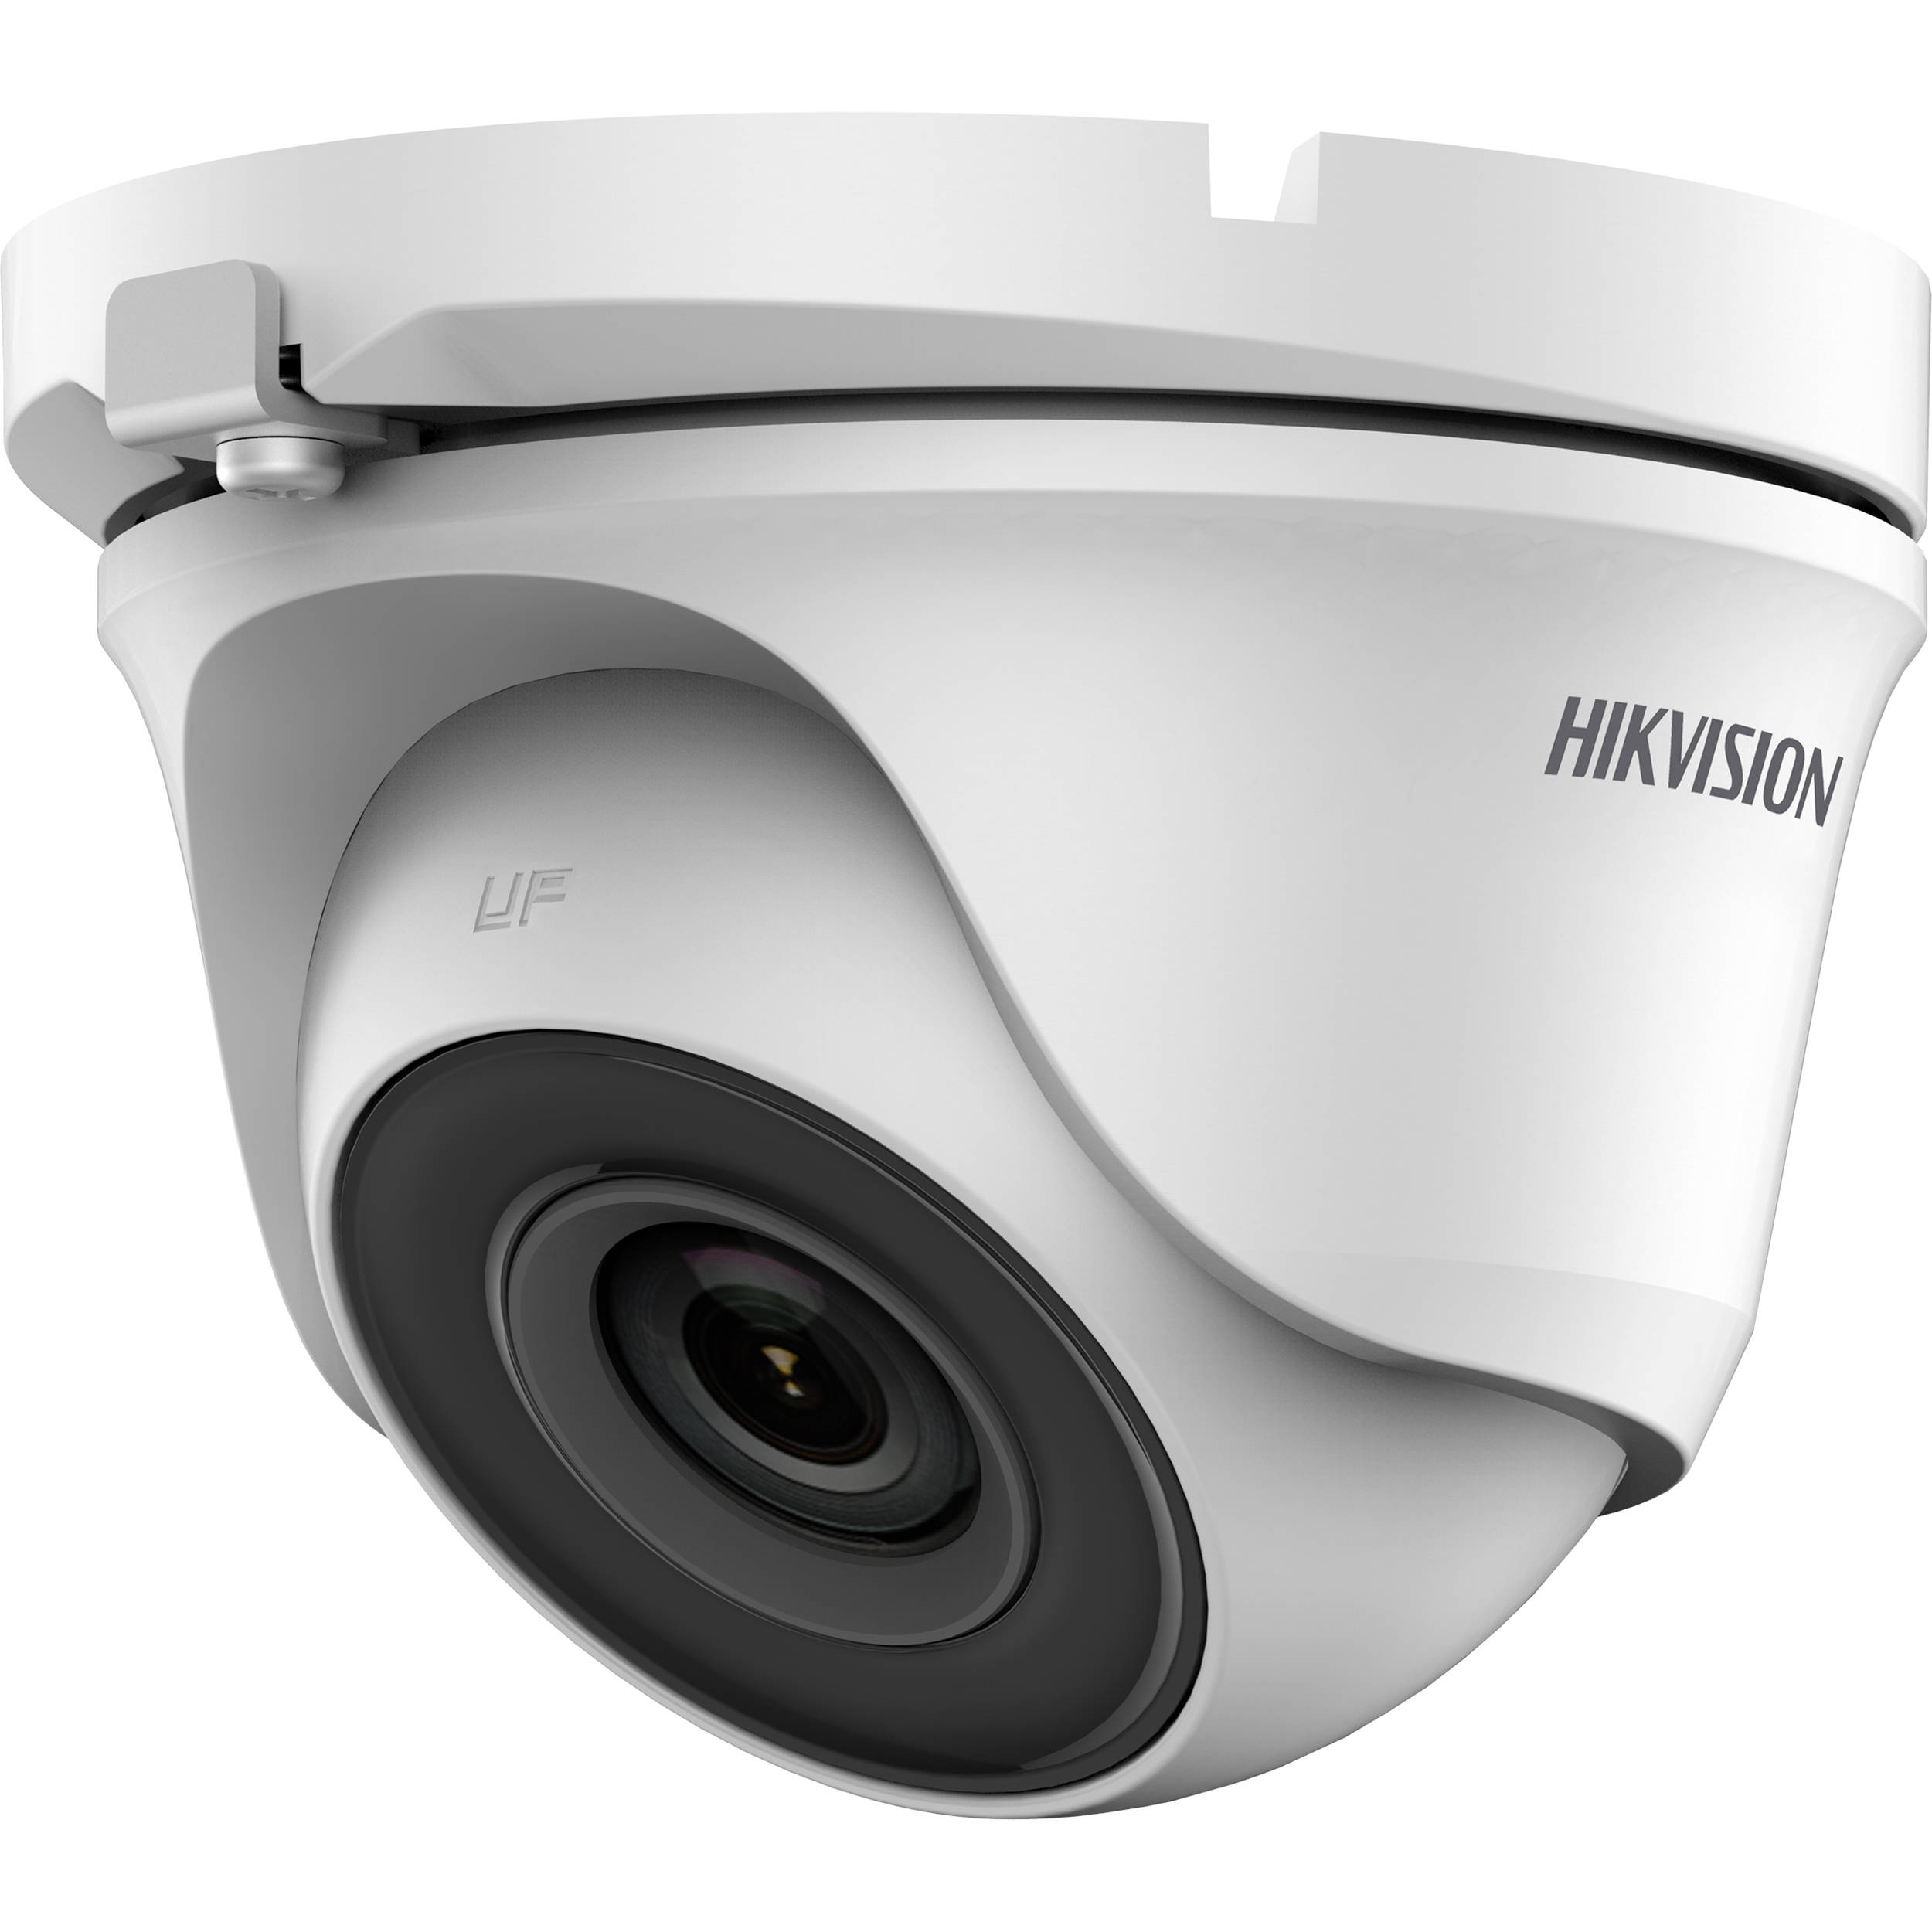 hikvision turbo hd camera installation